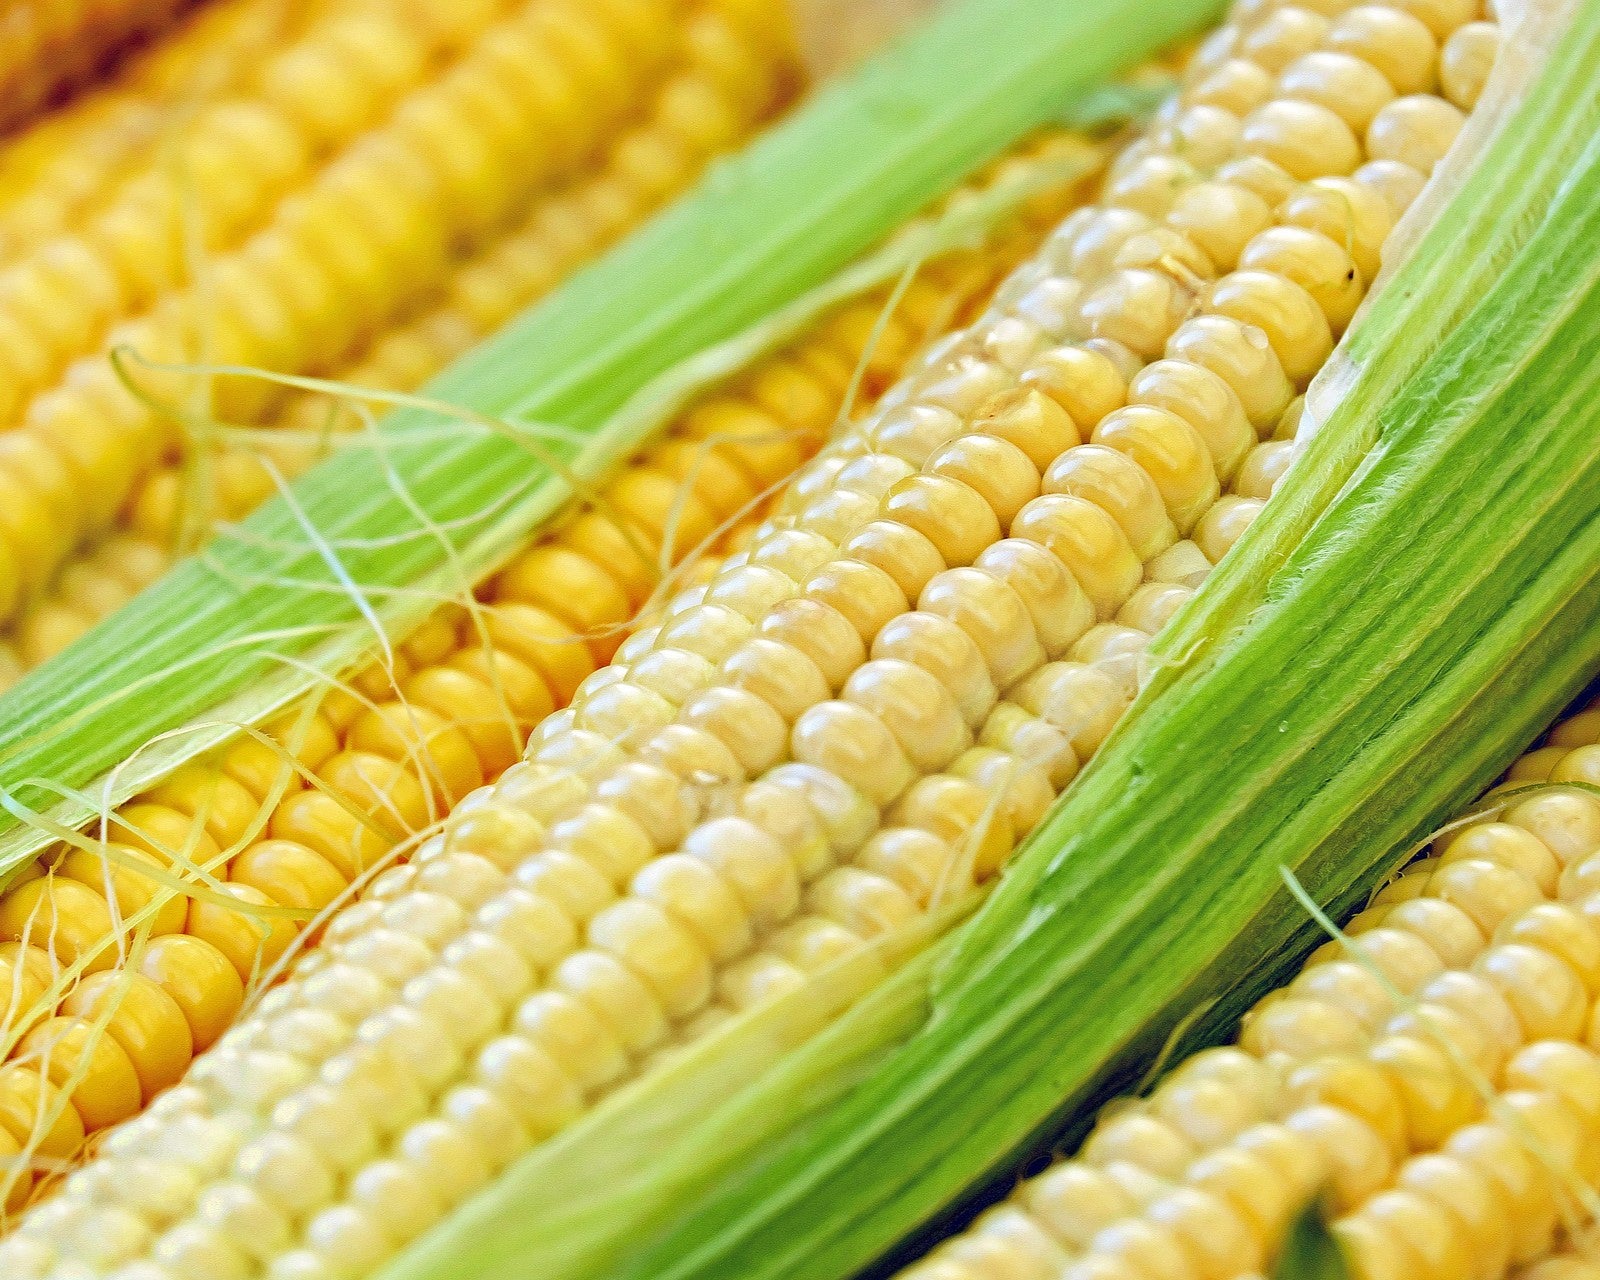 Ears of yellow sweet corn